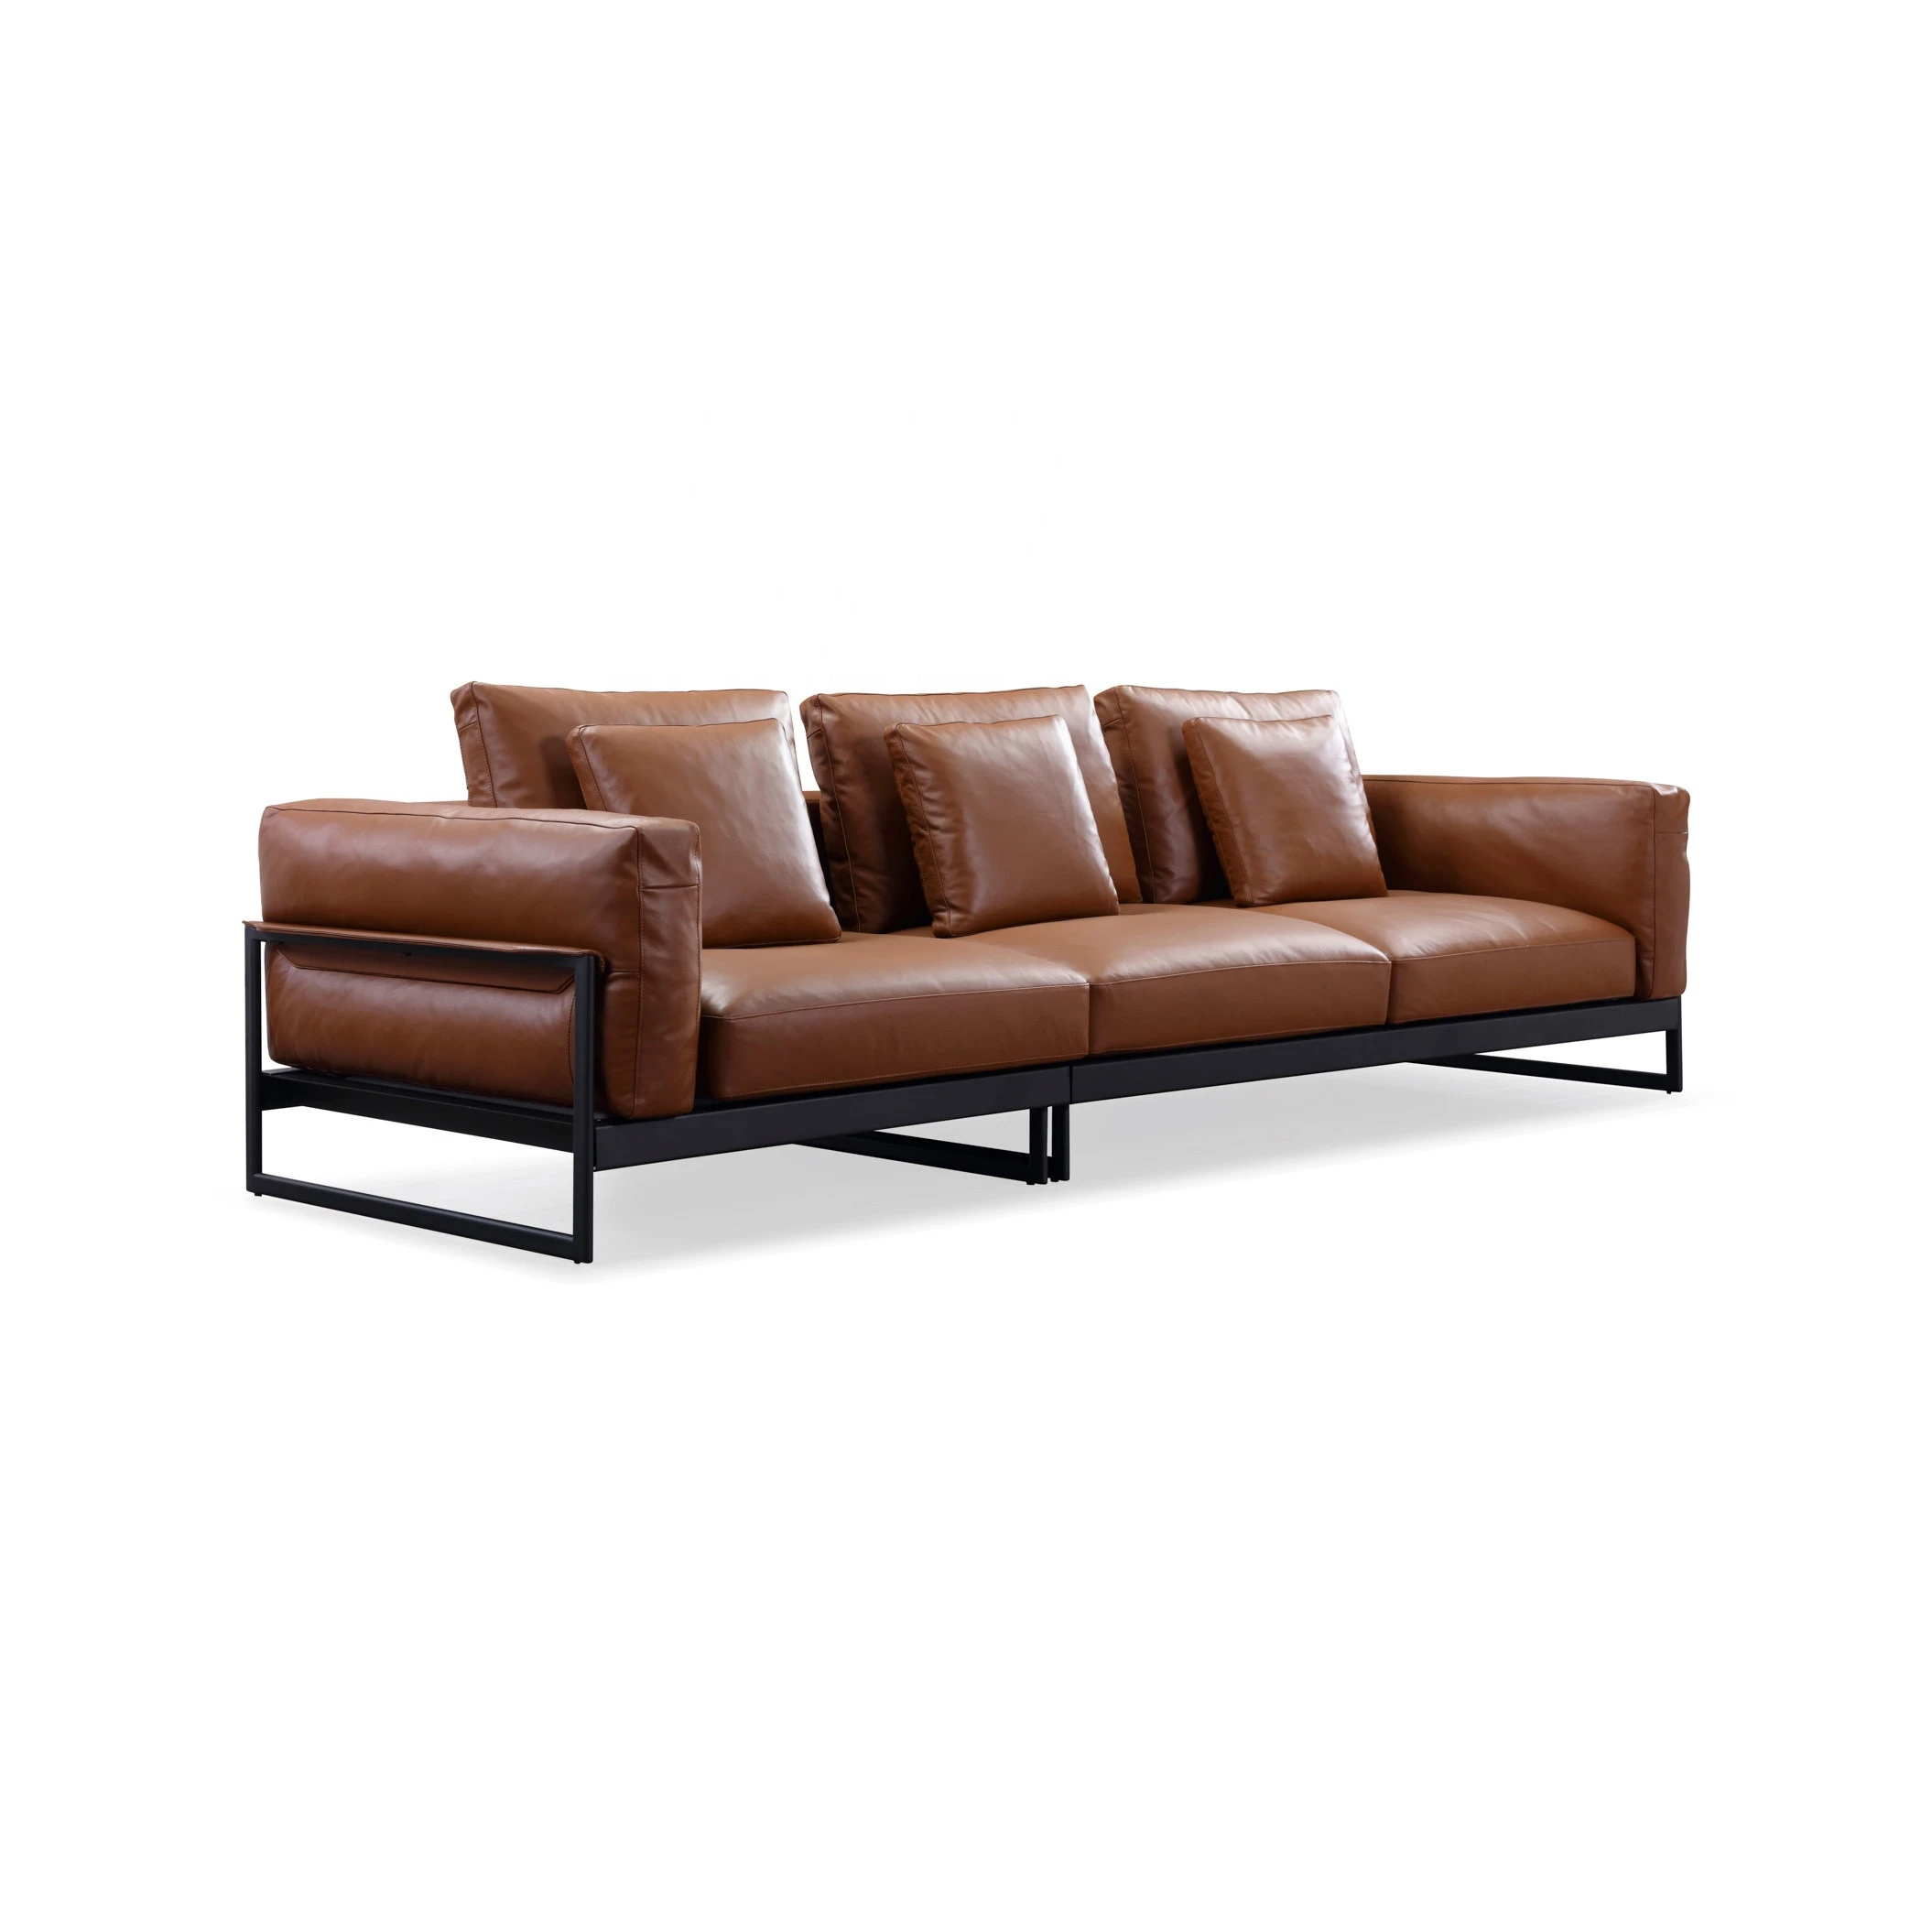 Italian High End Luxury Sofa Set Home Furniture 4 Seater Leather Sofa